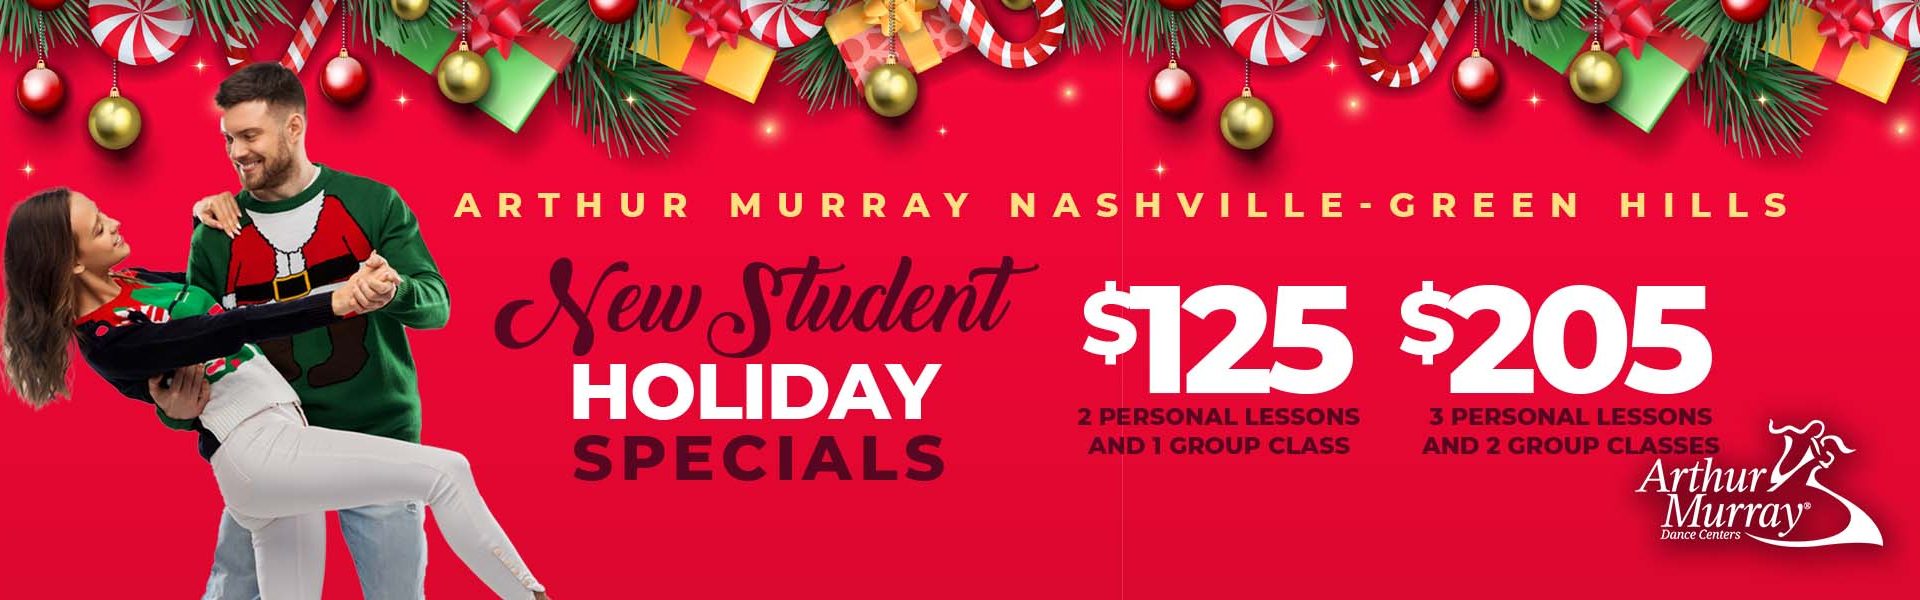 Arthur Murray Holiday Specials